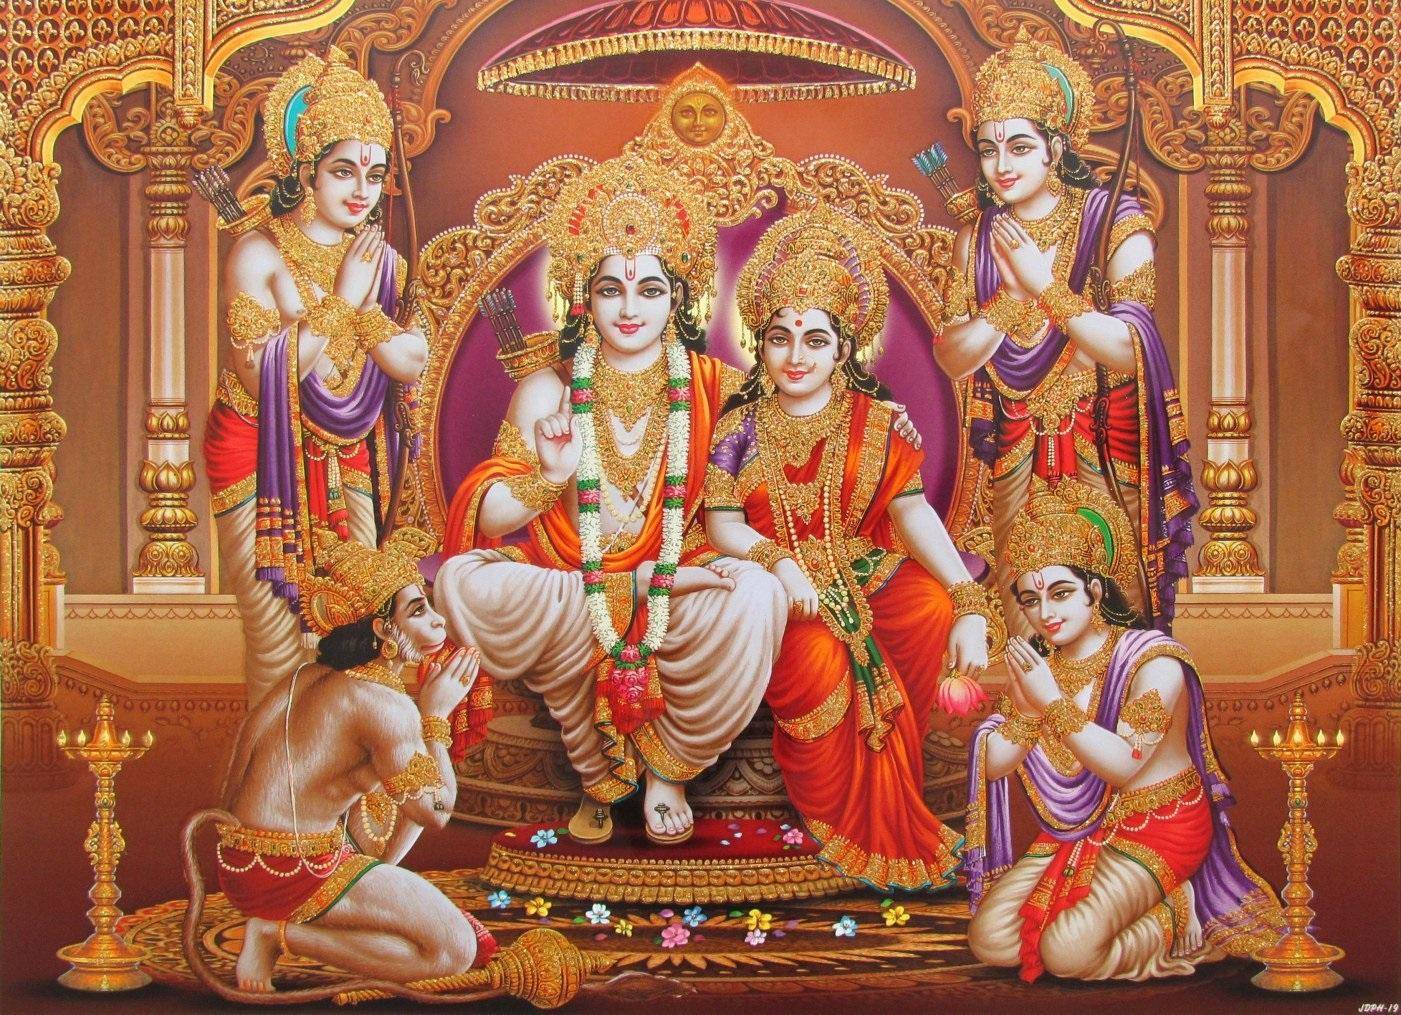 Janaki jayanti vrat katha: आज माता सीता की पूजा में जरूर पढ़ें ये व्रत कथा, मिलेगा पुण्य फल